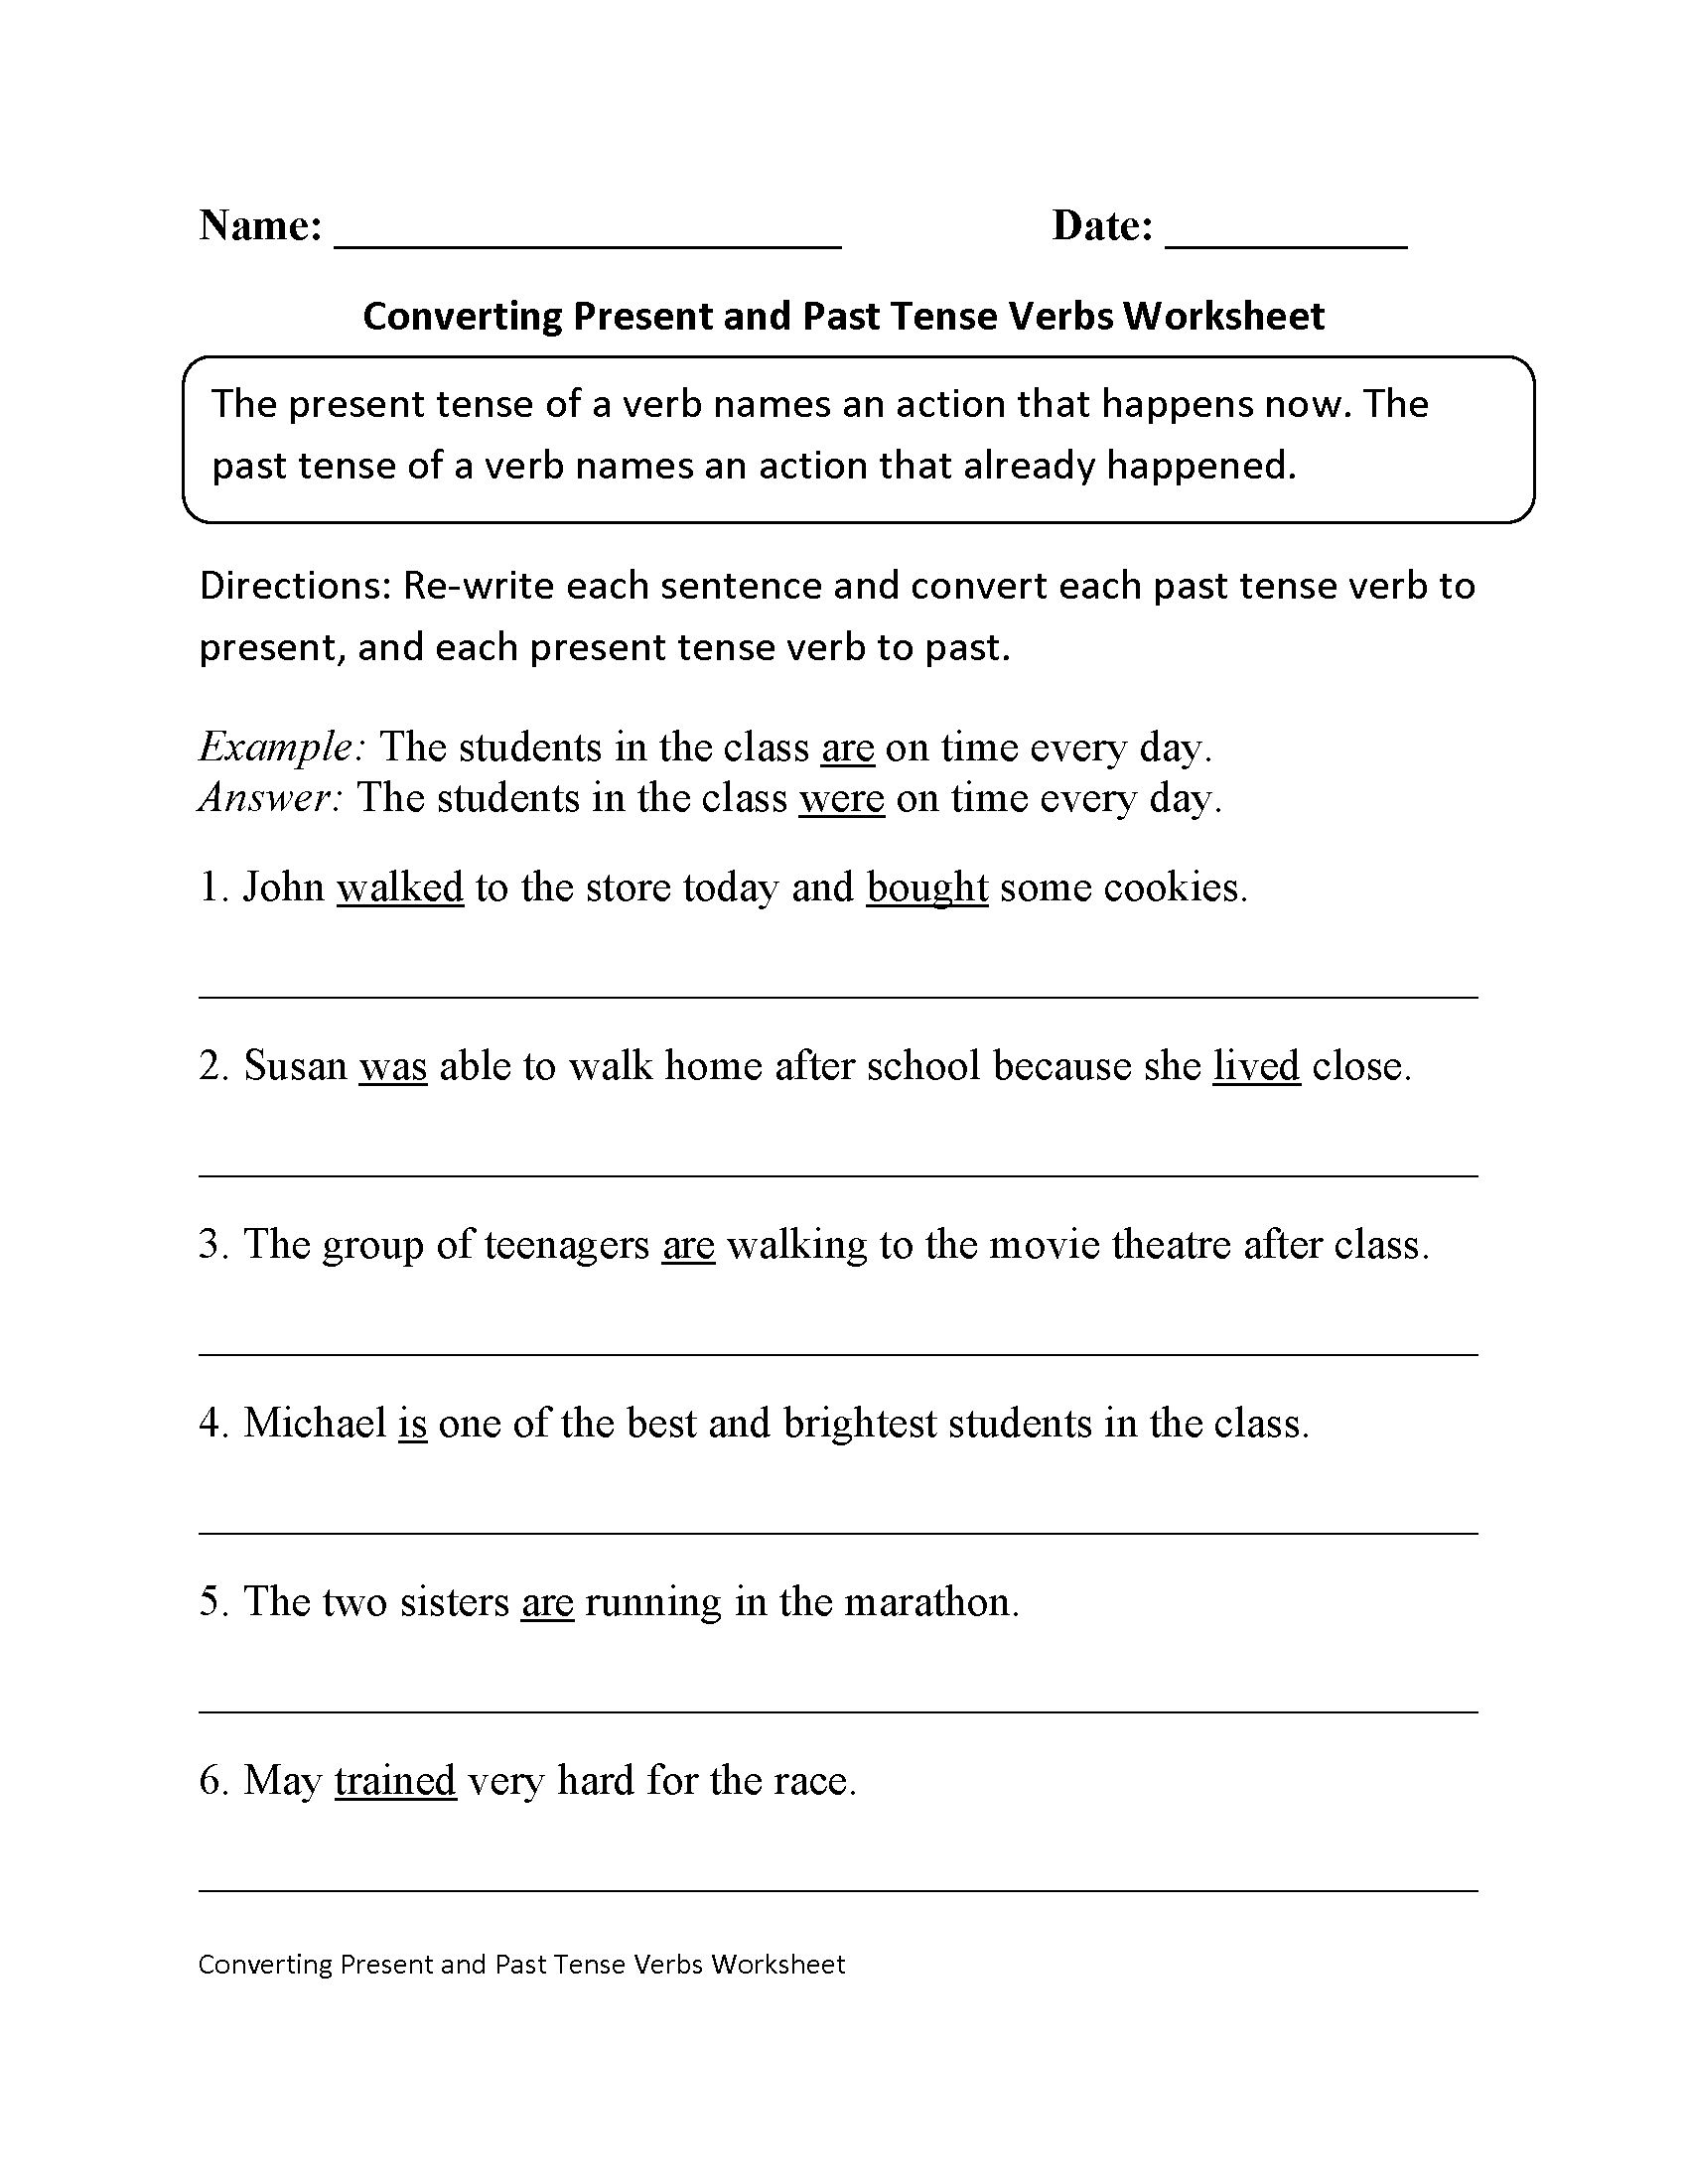 Worksheet Verb Worksheets For 2nd Grade Grass Fedjp Worksheet Study Site